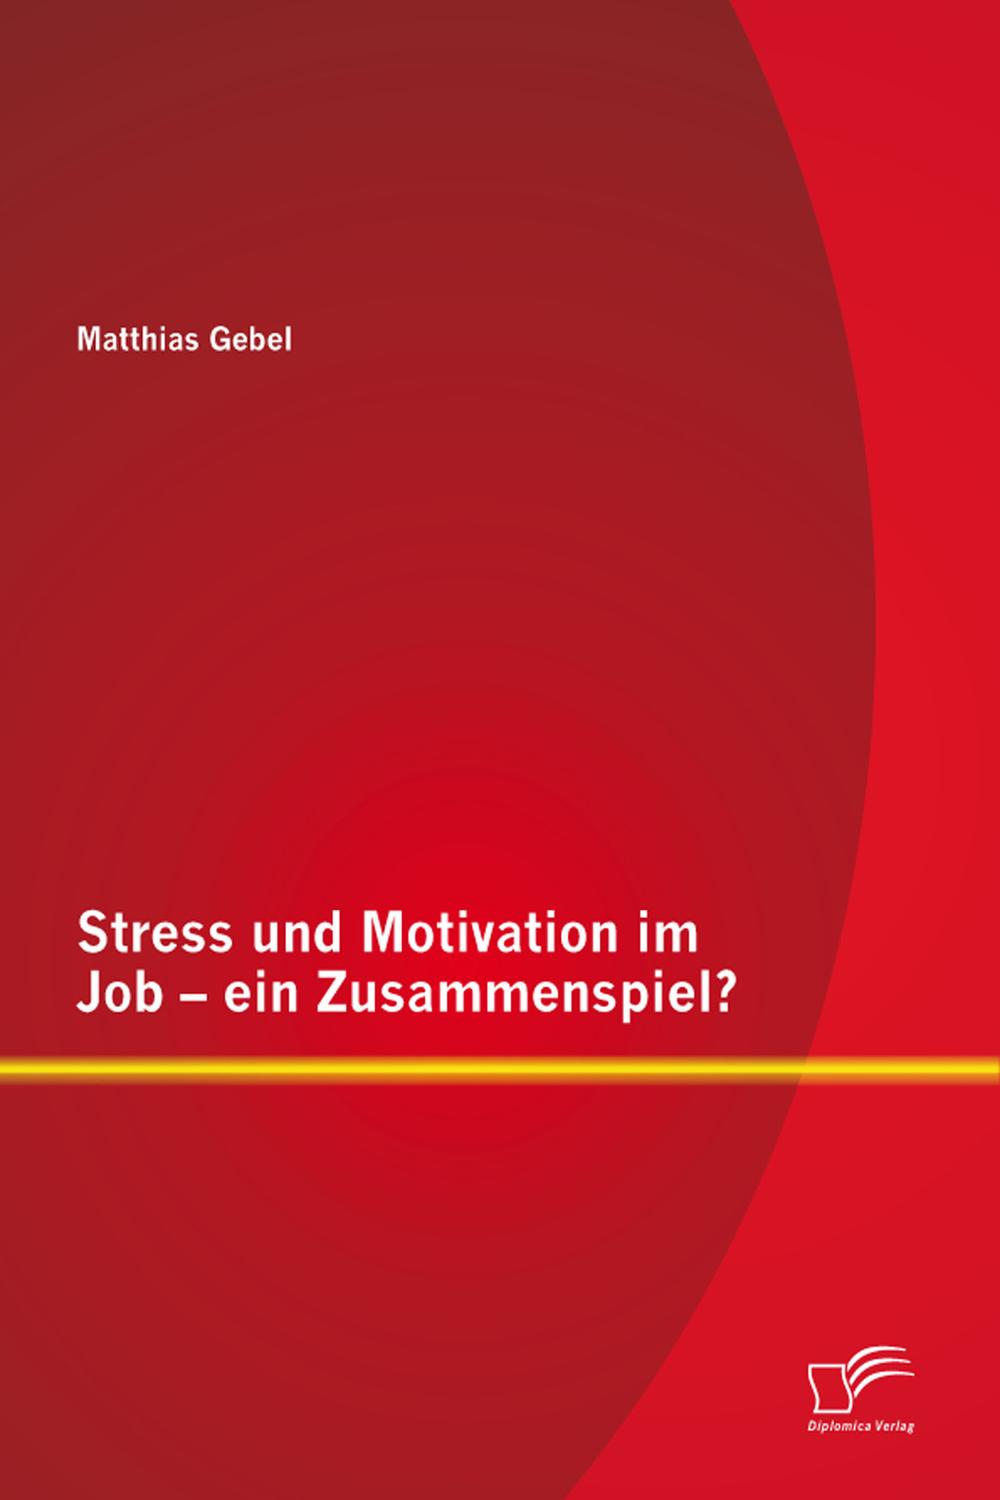 Stress und Motivation im Job – ein Zusammenspiel? - Matthias Gebel